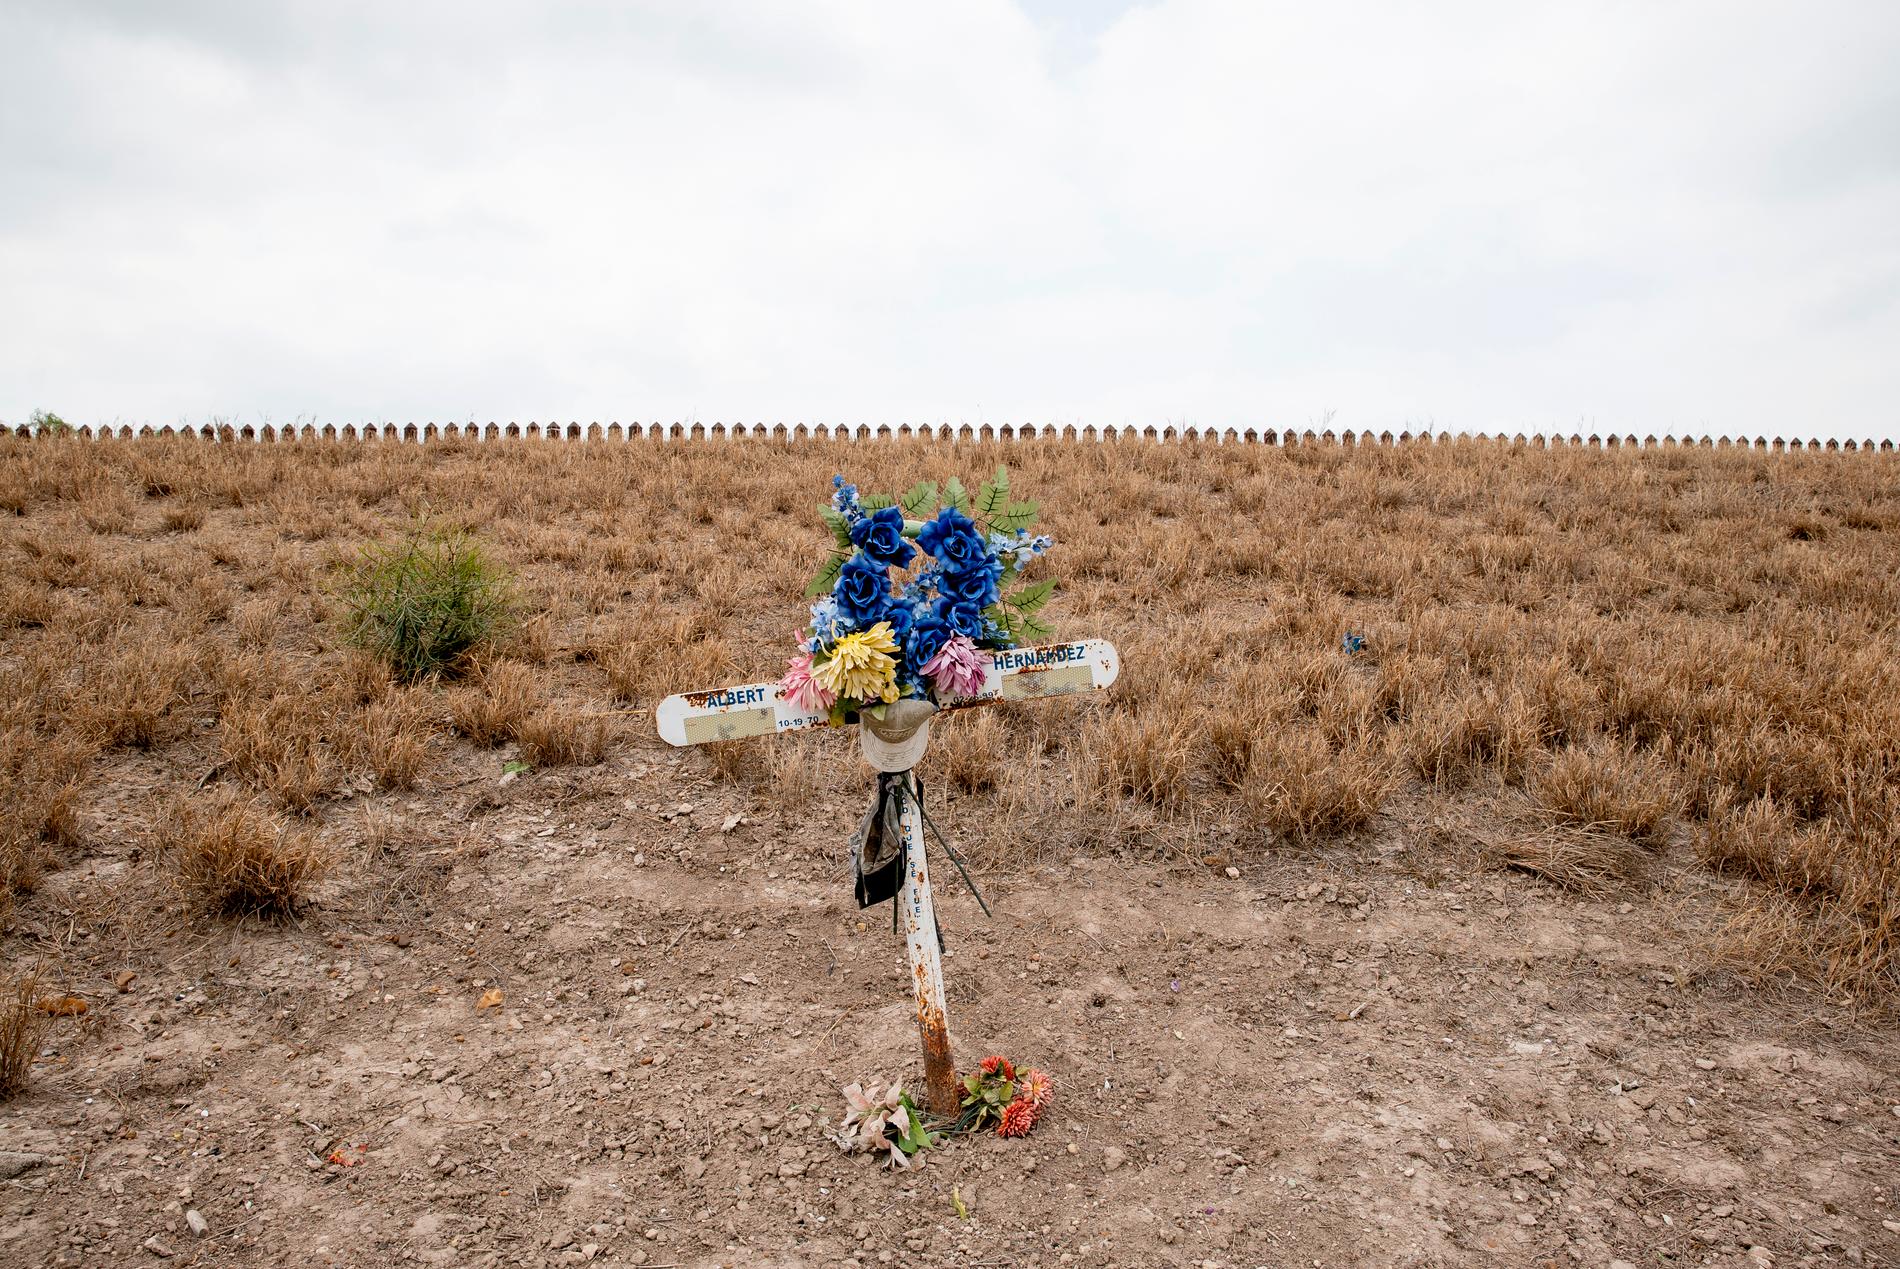 Ett kors markerar minnesplatsen för en död migrant. I bakgrunden skymtar en del av stålbarriären som delar USA och Mexiko.